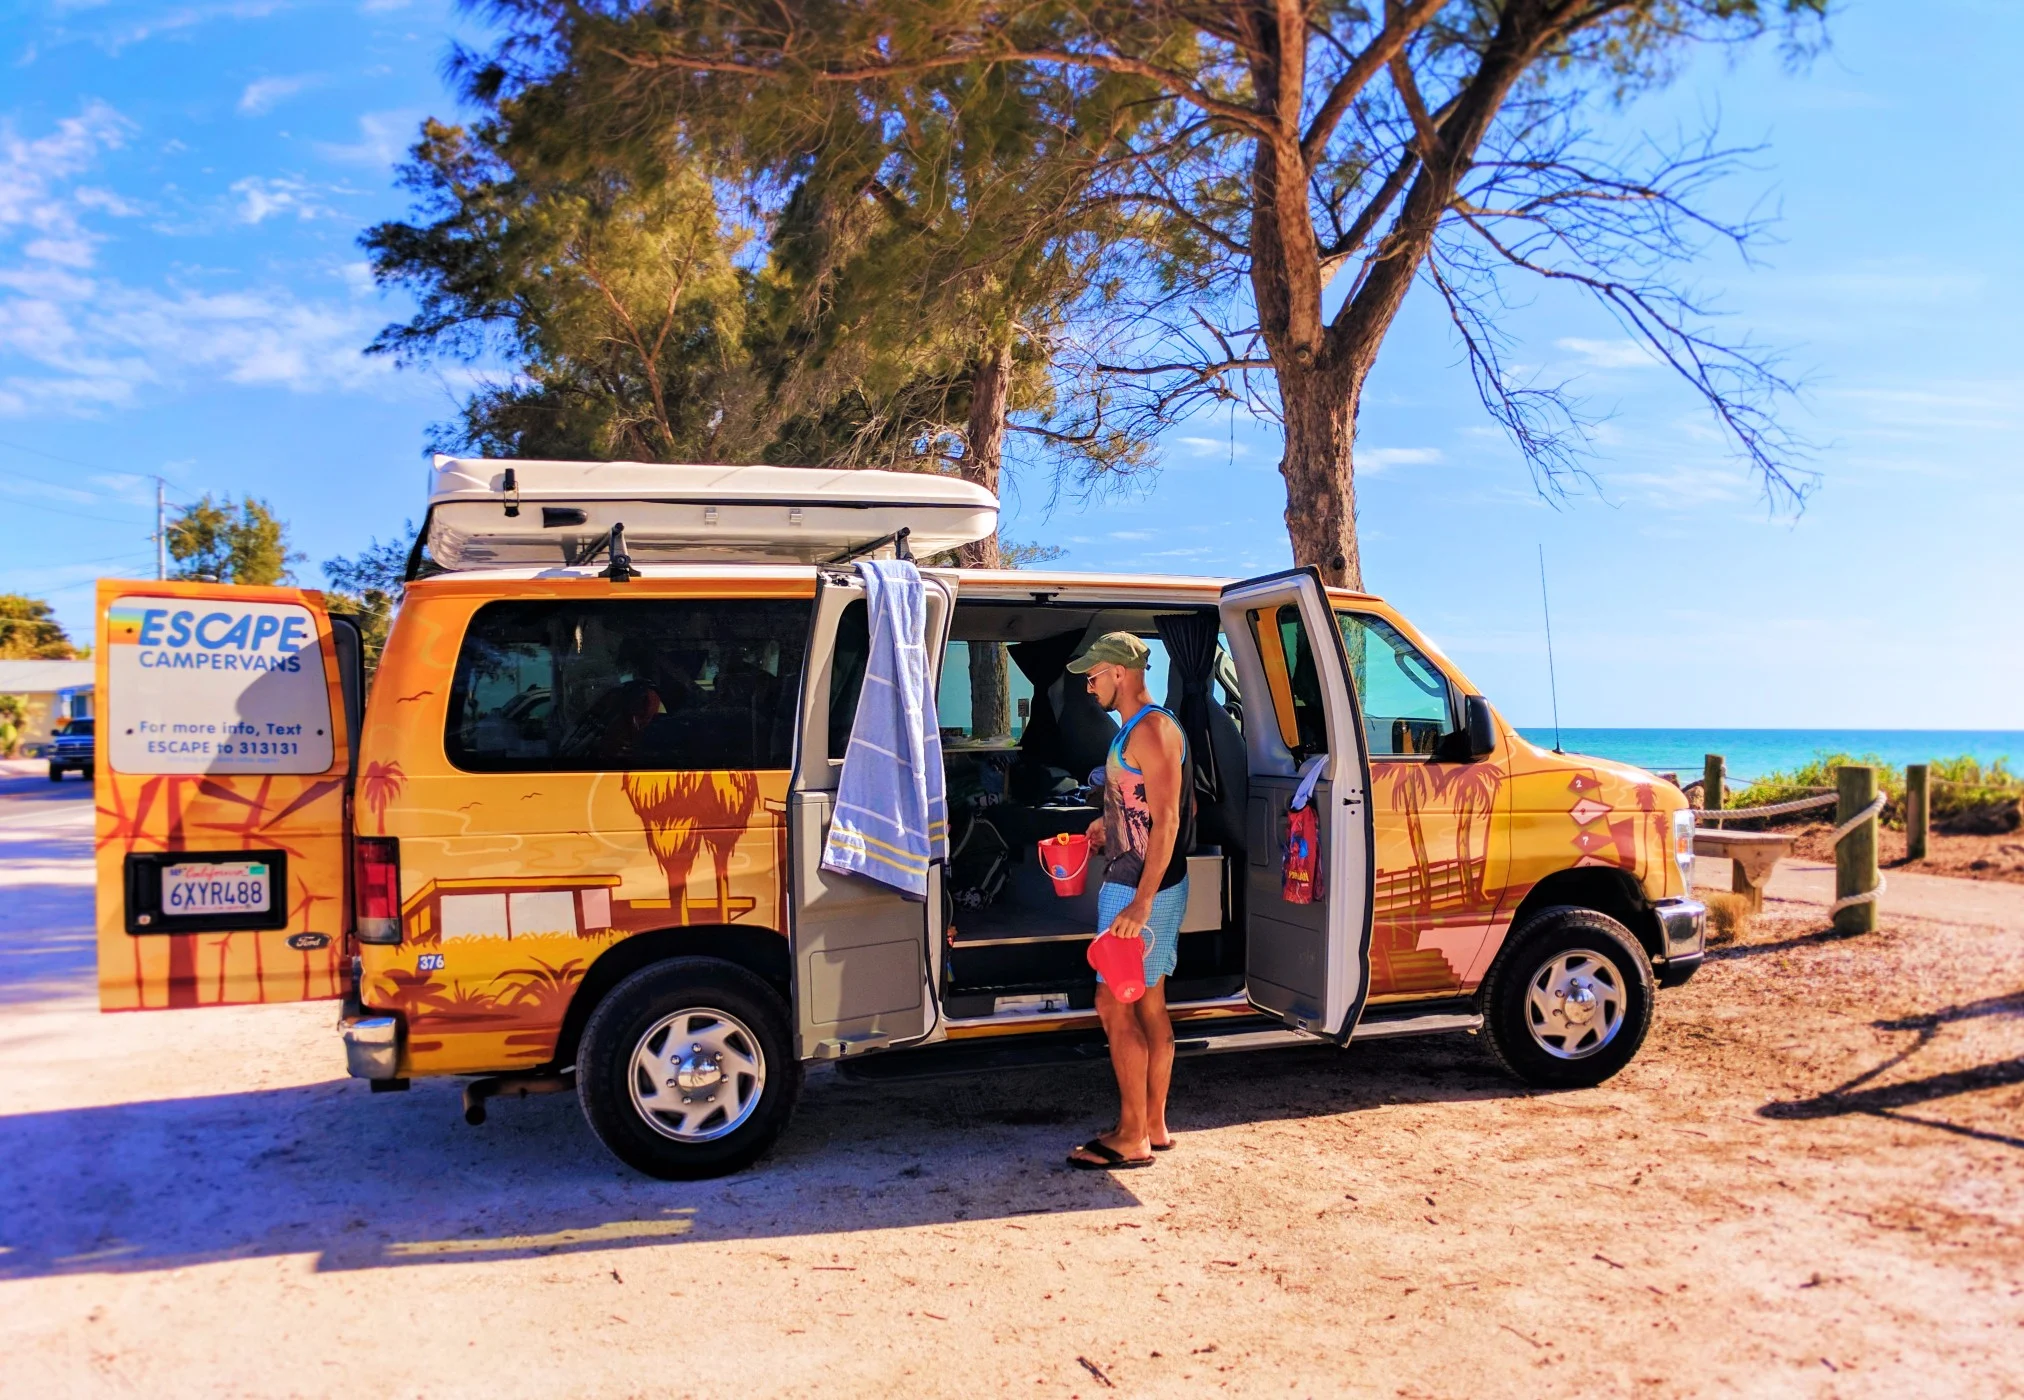 Escape Campervan at Bradenton Beach Manatee County Florida 2